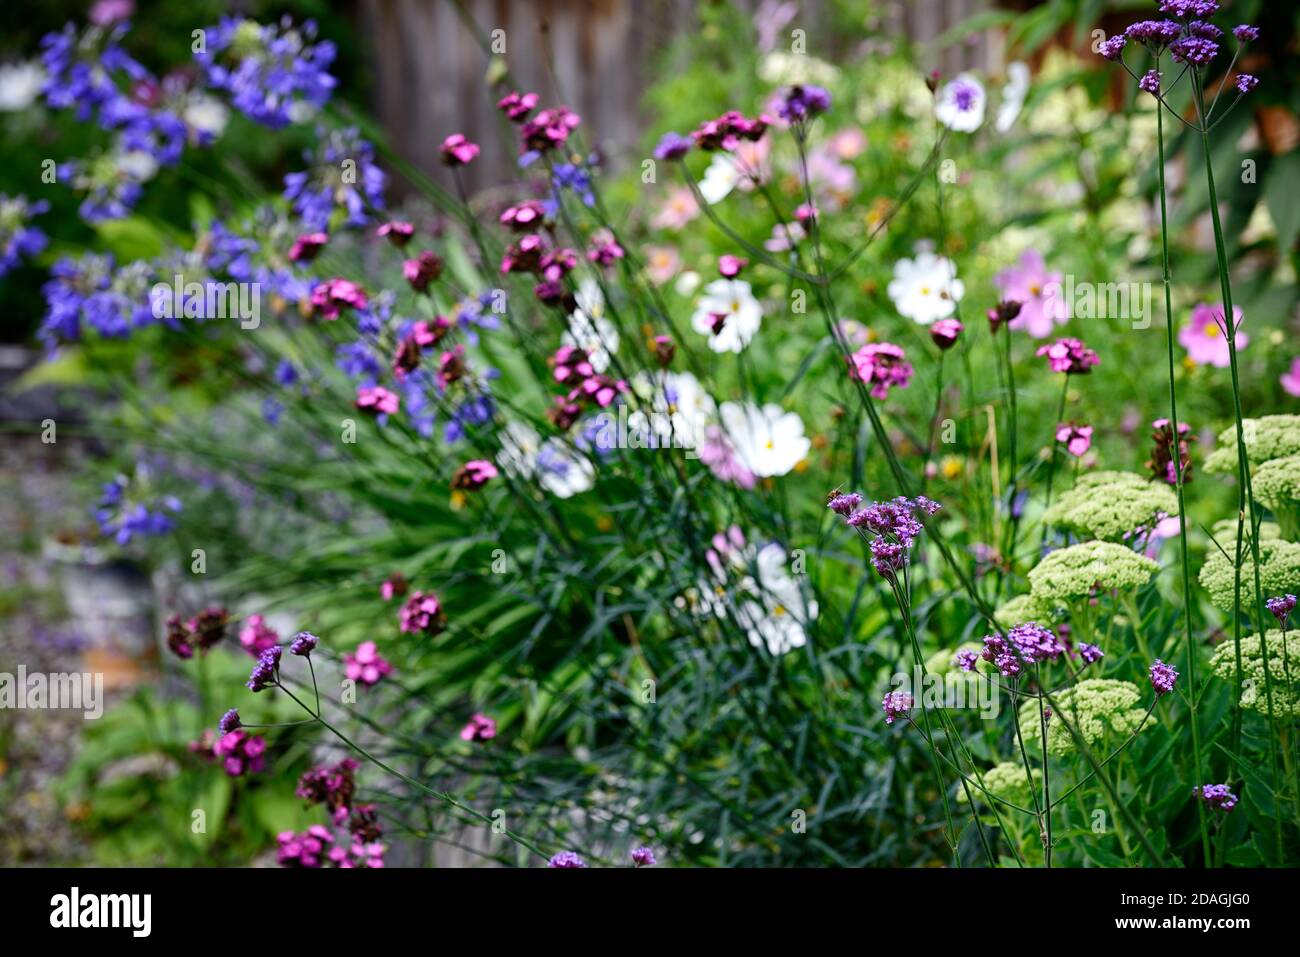 Verbena bonariensis,Dianthus carthusium,rose carthusien,Agapanthus inapertus,fleurs bleu agapanthus,vivaces,bordures mixtes,jardin,jardins,fleurs Banque D'Images